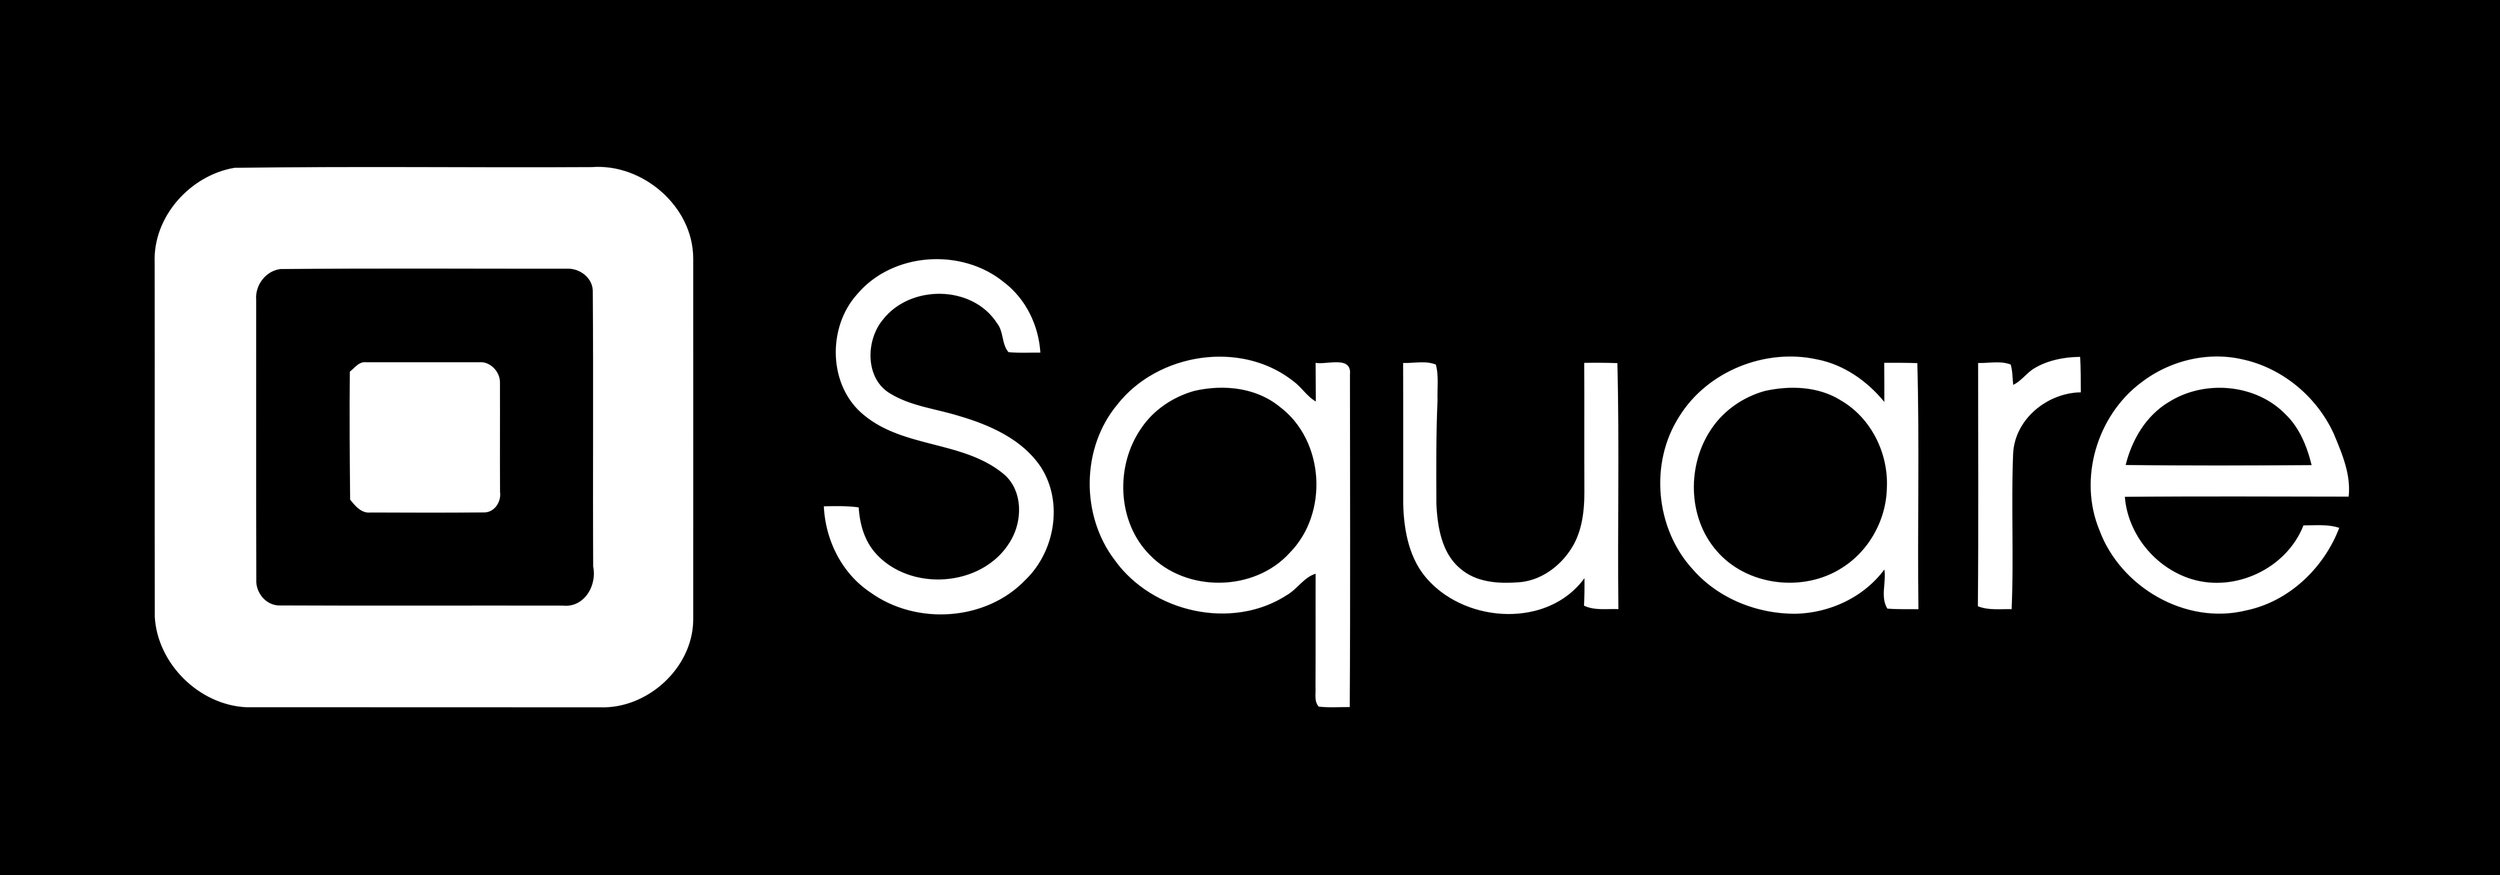 SquareLogo.jpg